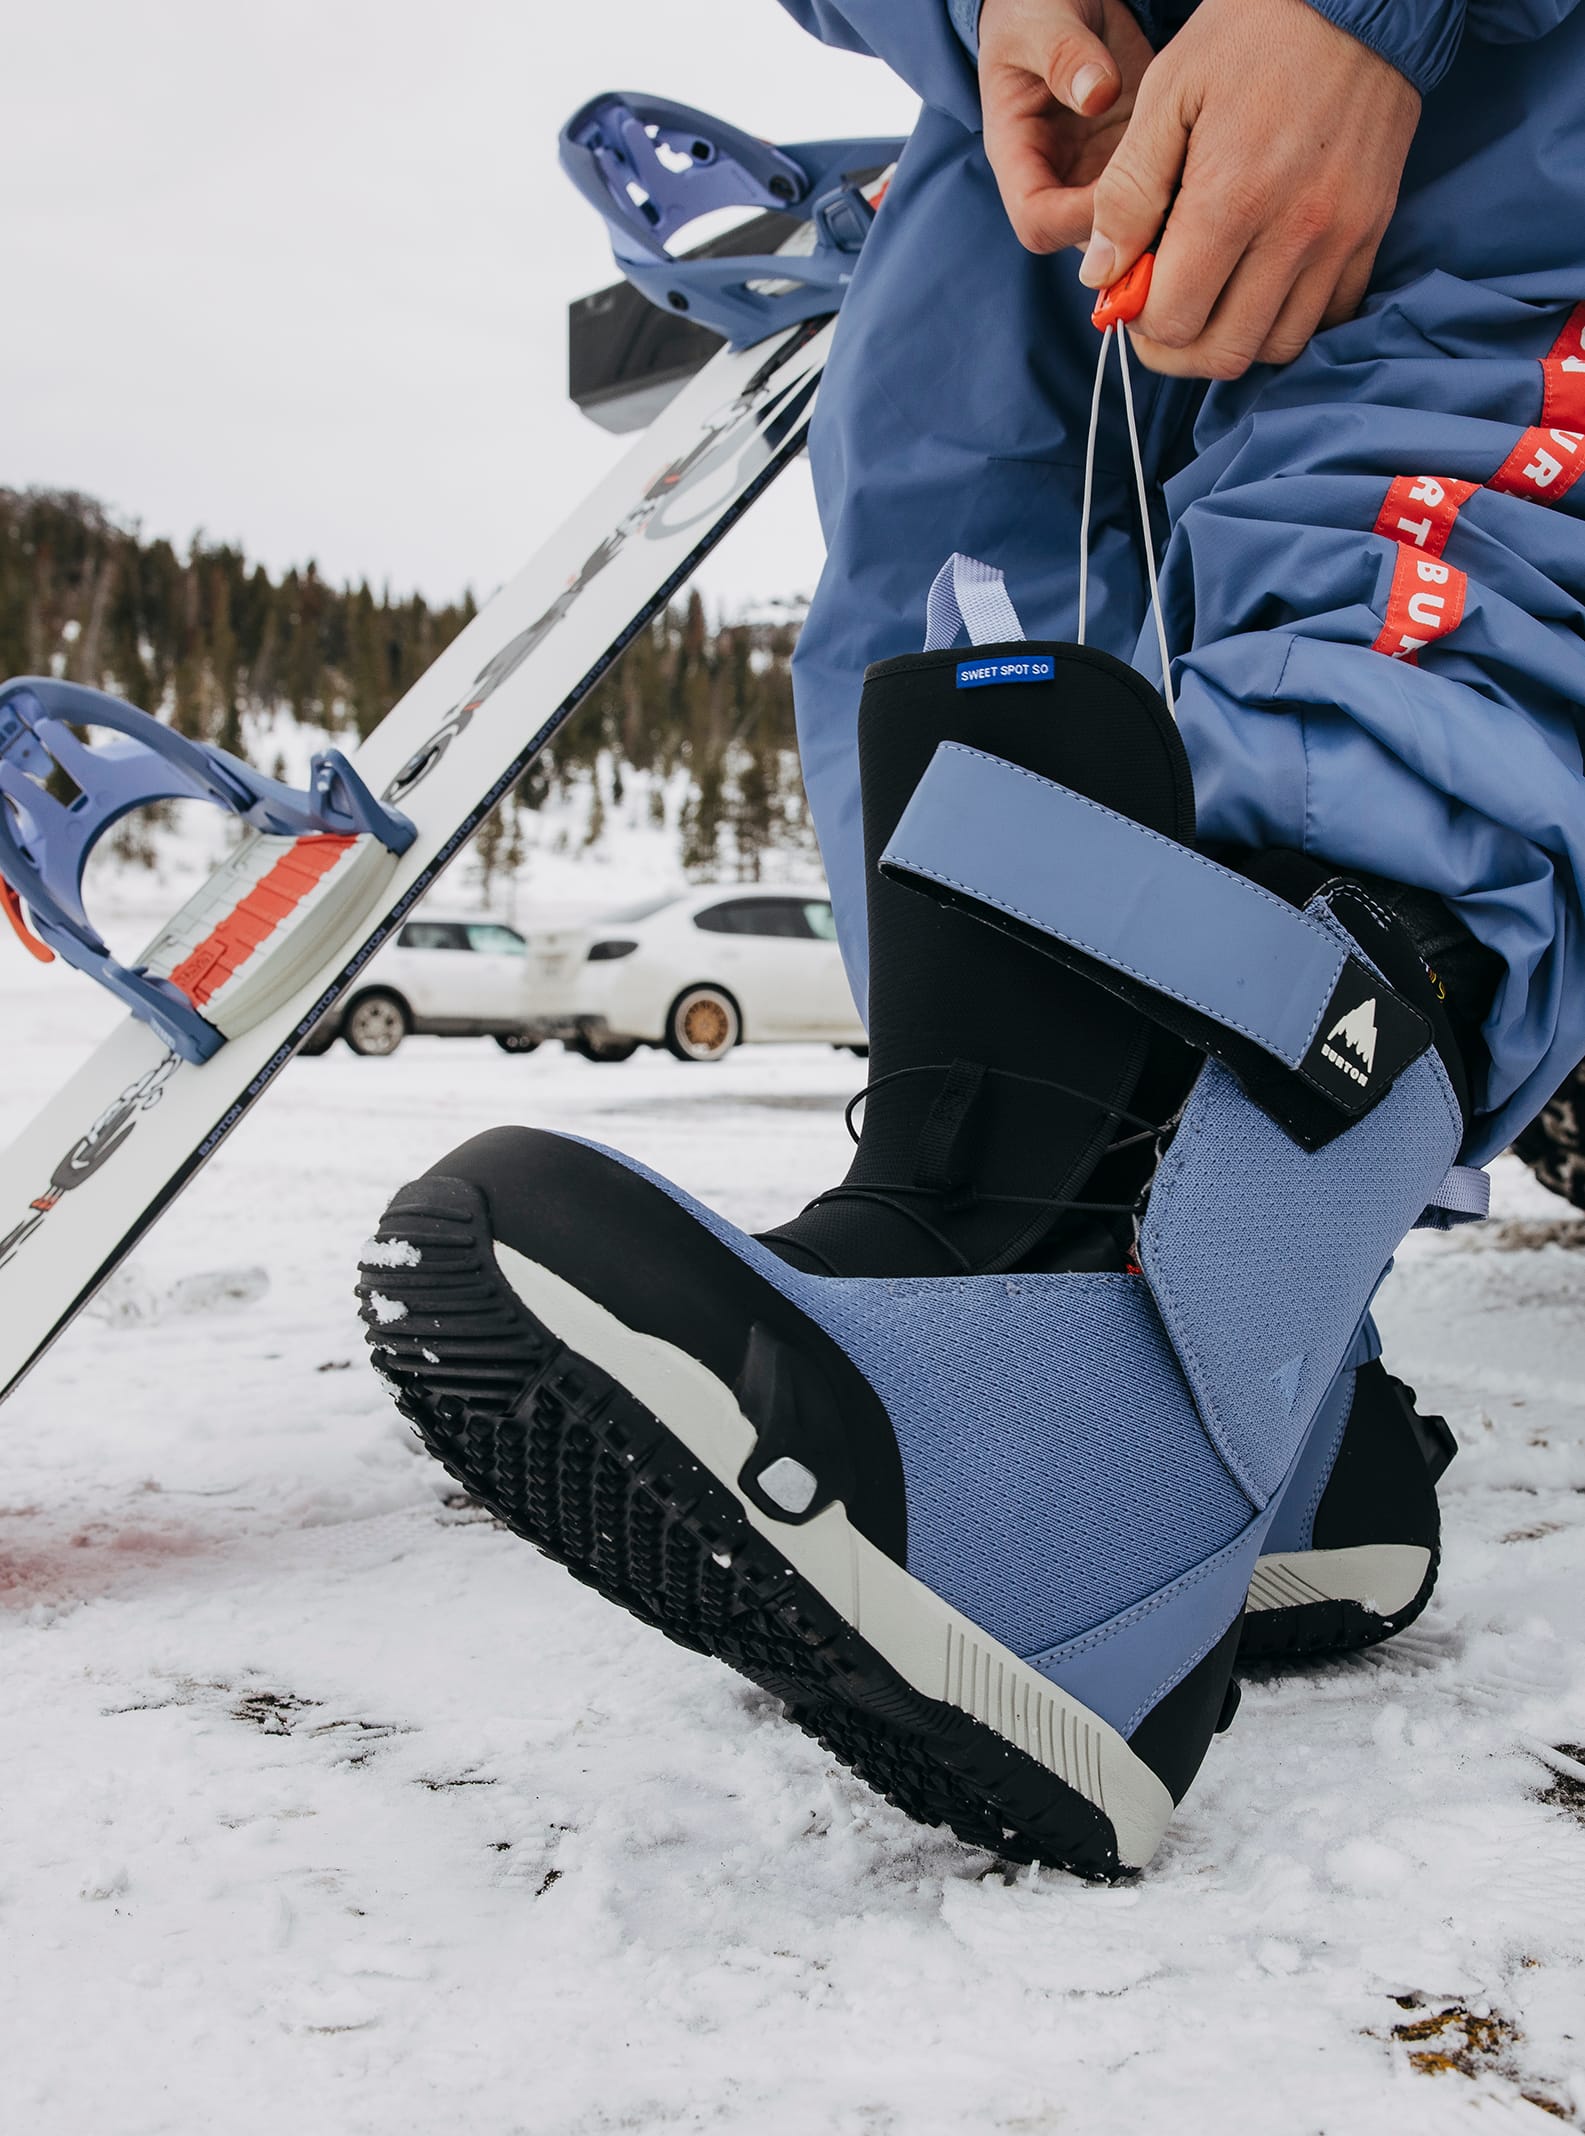 新品　メンズ Burton ルーラー Step On® スノーボードブーツ